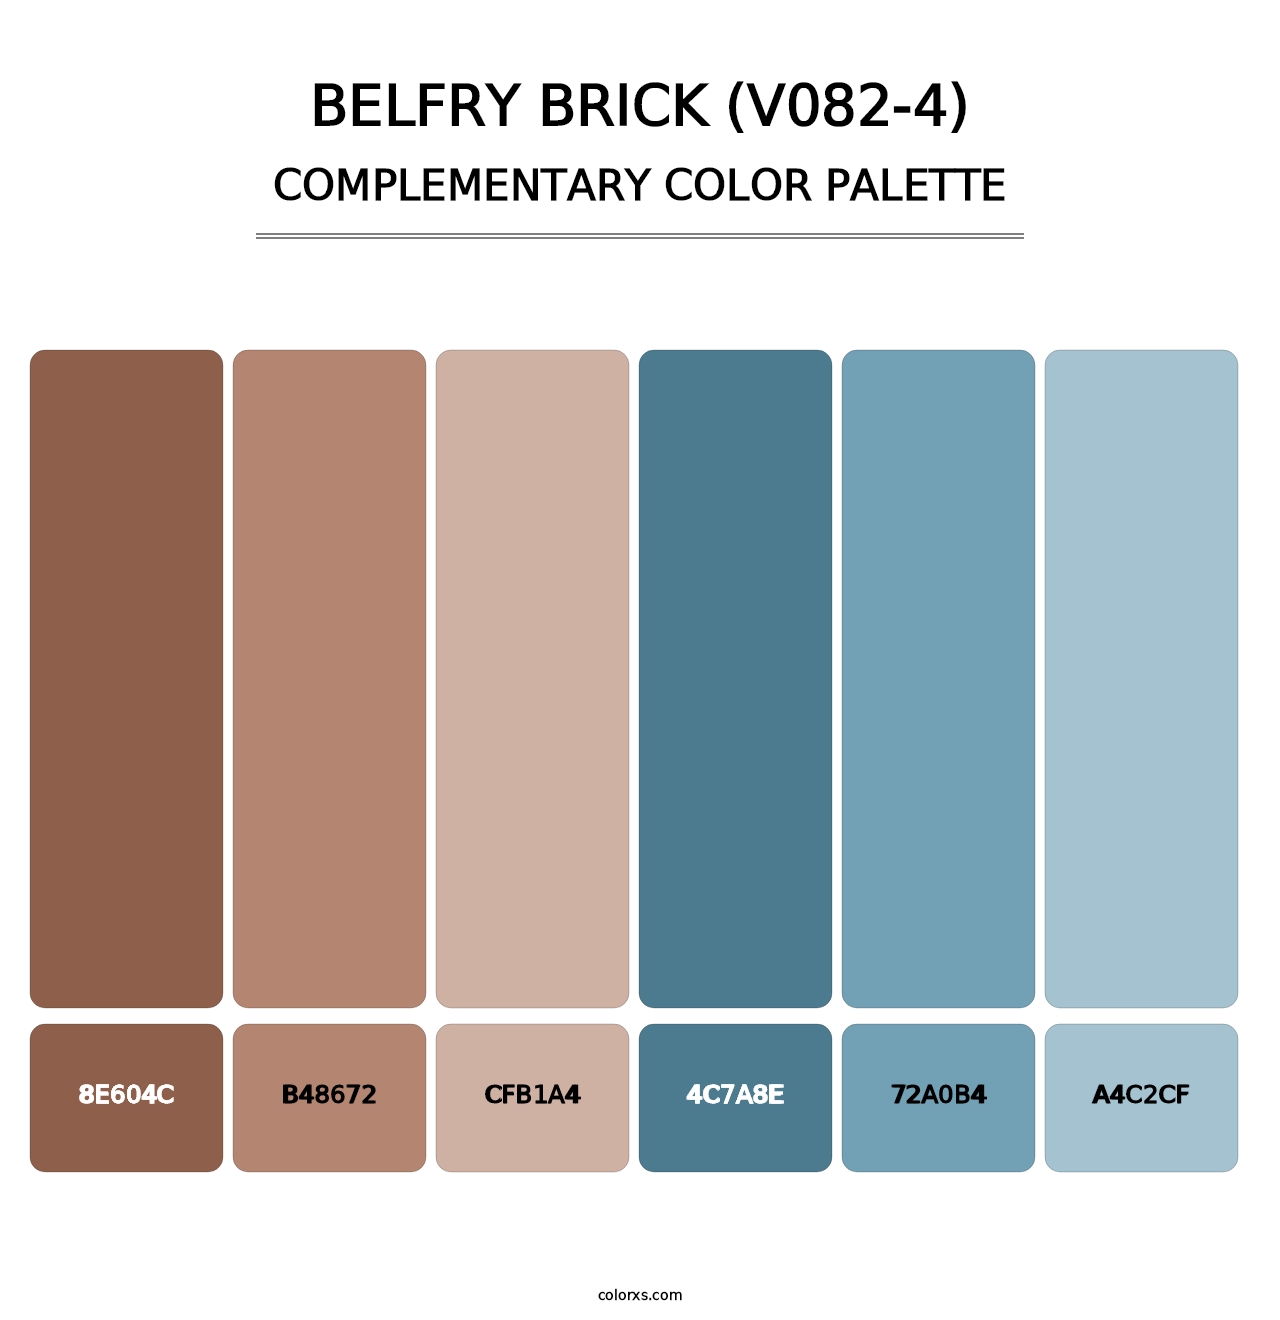 Belfry Brick (V082-4) - Complementary Color Palette